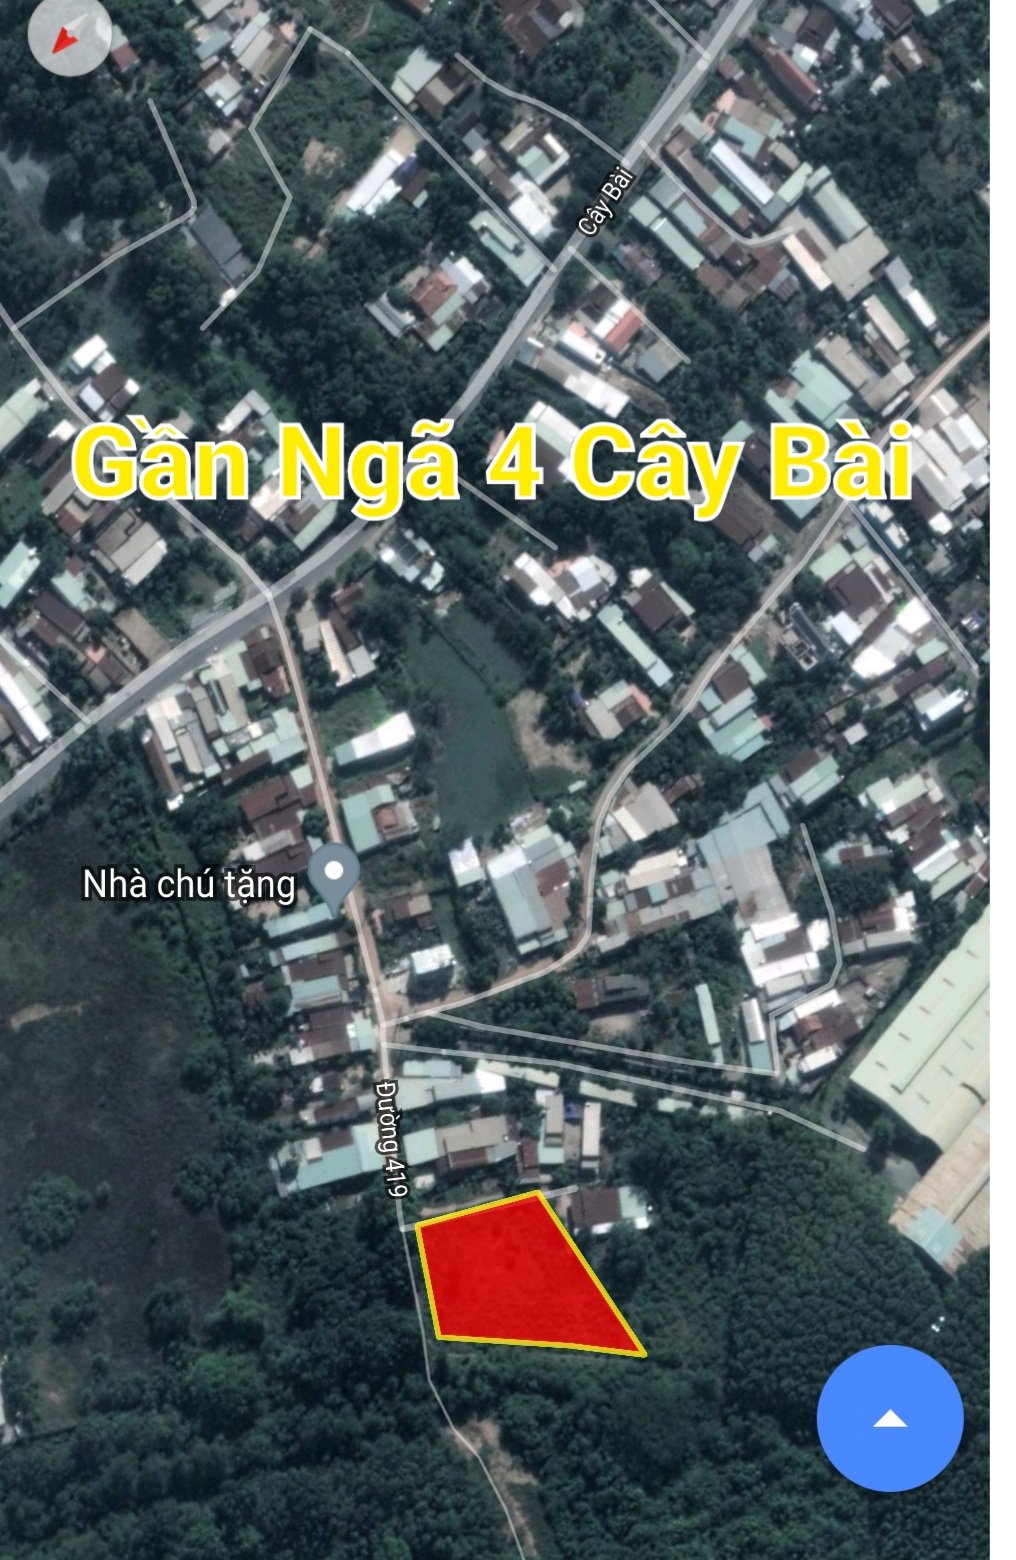 Ảnh nhà đất Đất gần 2500m2 thổ cư toàn bộ 2 mặt tiền gần trung tâm Phước Vĩnh An và Thị Trấn Củ Chi, cách Cây Bài chỉ 200m